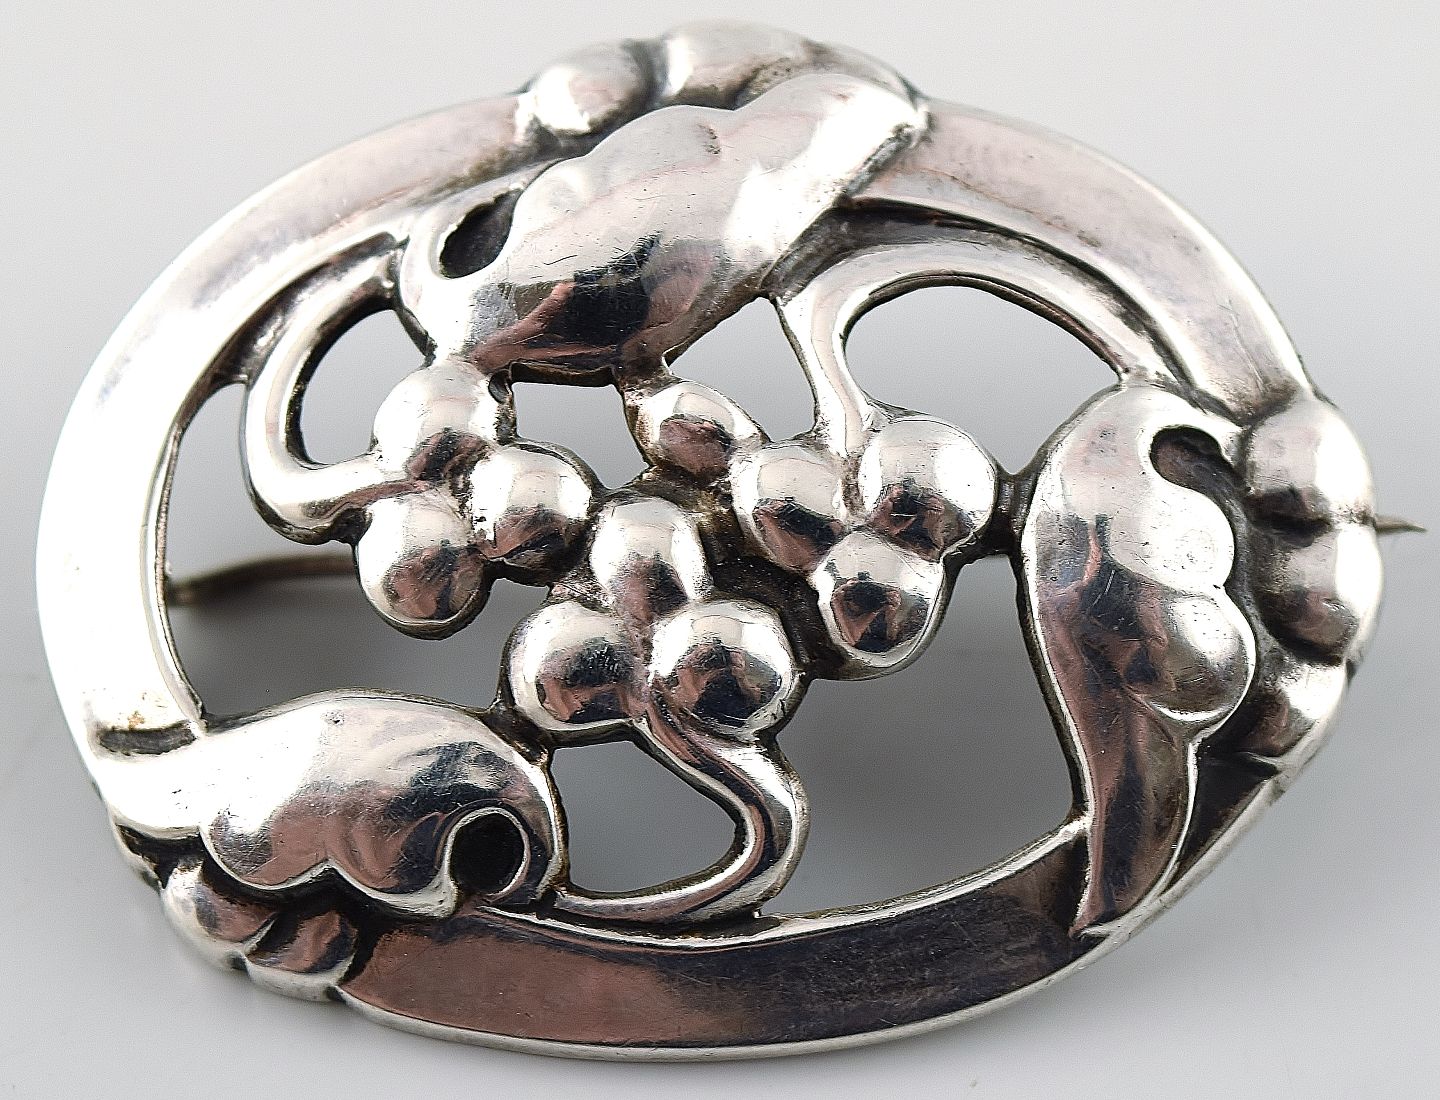 www.Antikvitet.net - Georg Jensen Art nouveau broche i sølv. Tidlige * 4 cm. i diameter. I god stand.